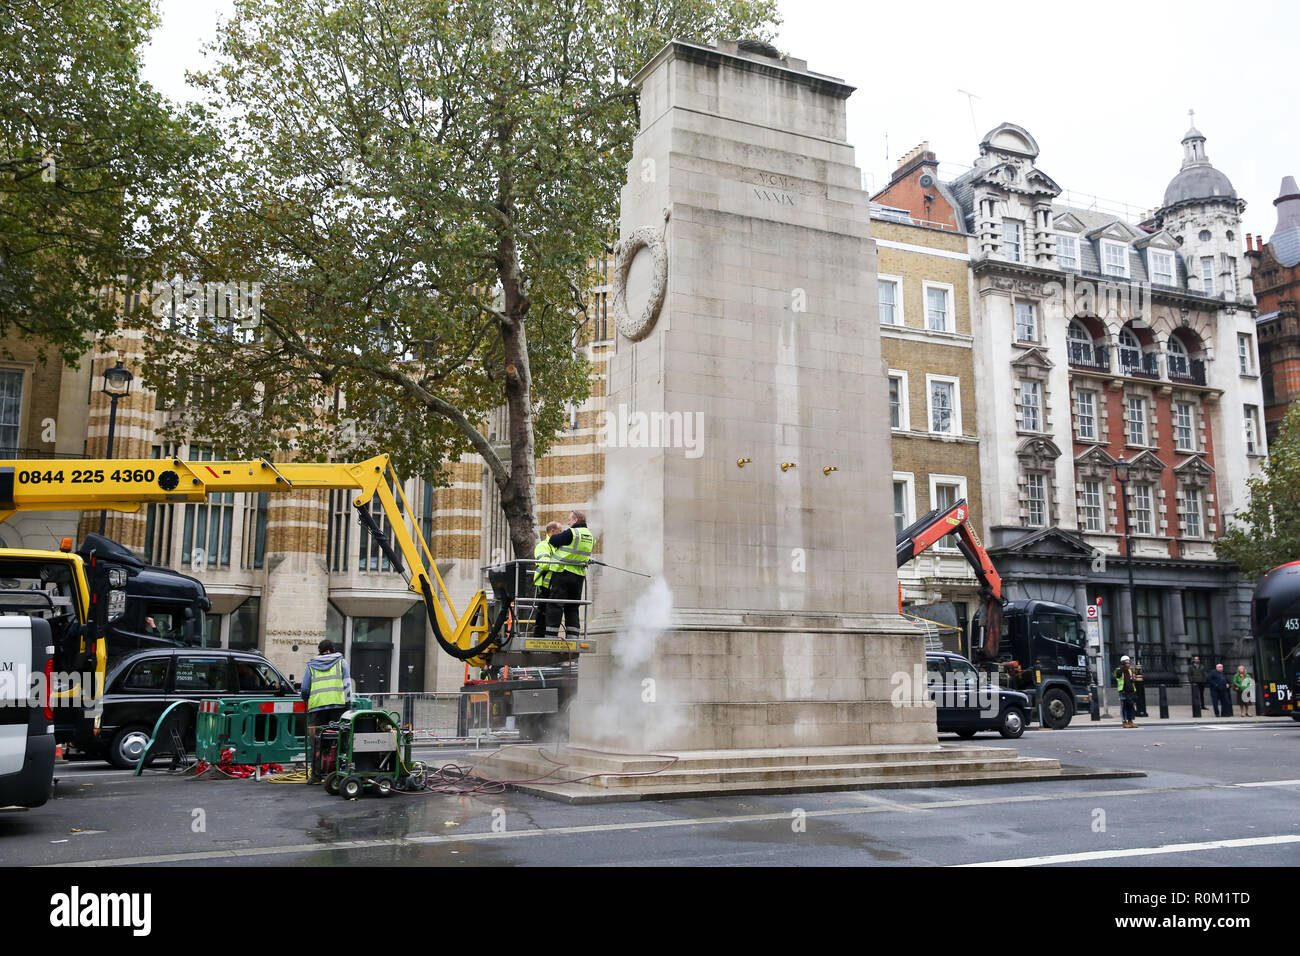 Los trabajadores limpie el cenotafio memorial en Whitehall, Londres central antes de la ceremonia del Día del Armisticio, el 11 de noviembre. Los miembros de la familia real y políticos clave, asistirán a la ceremonia. Foto de stock